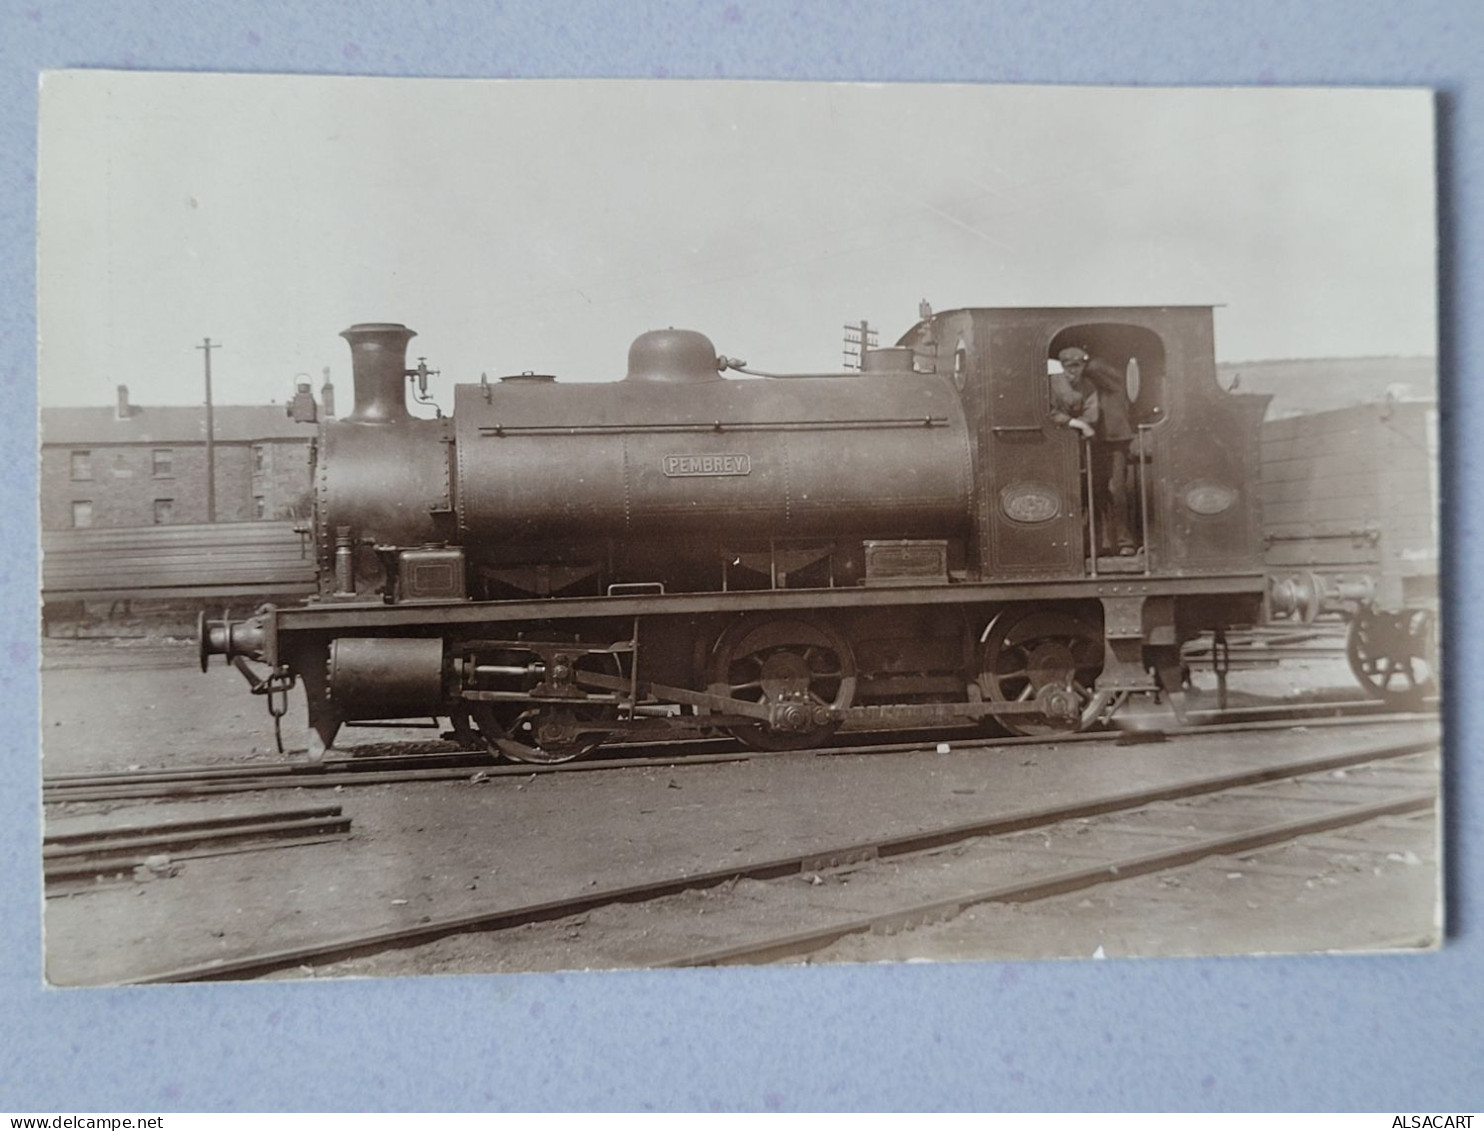 Carte Photo Locomotive Pembrey - Eisenbahnen